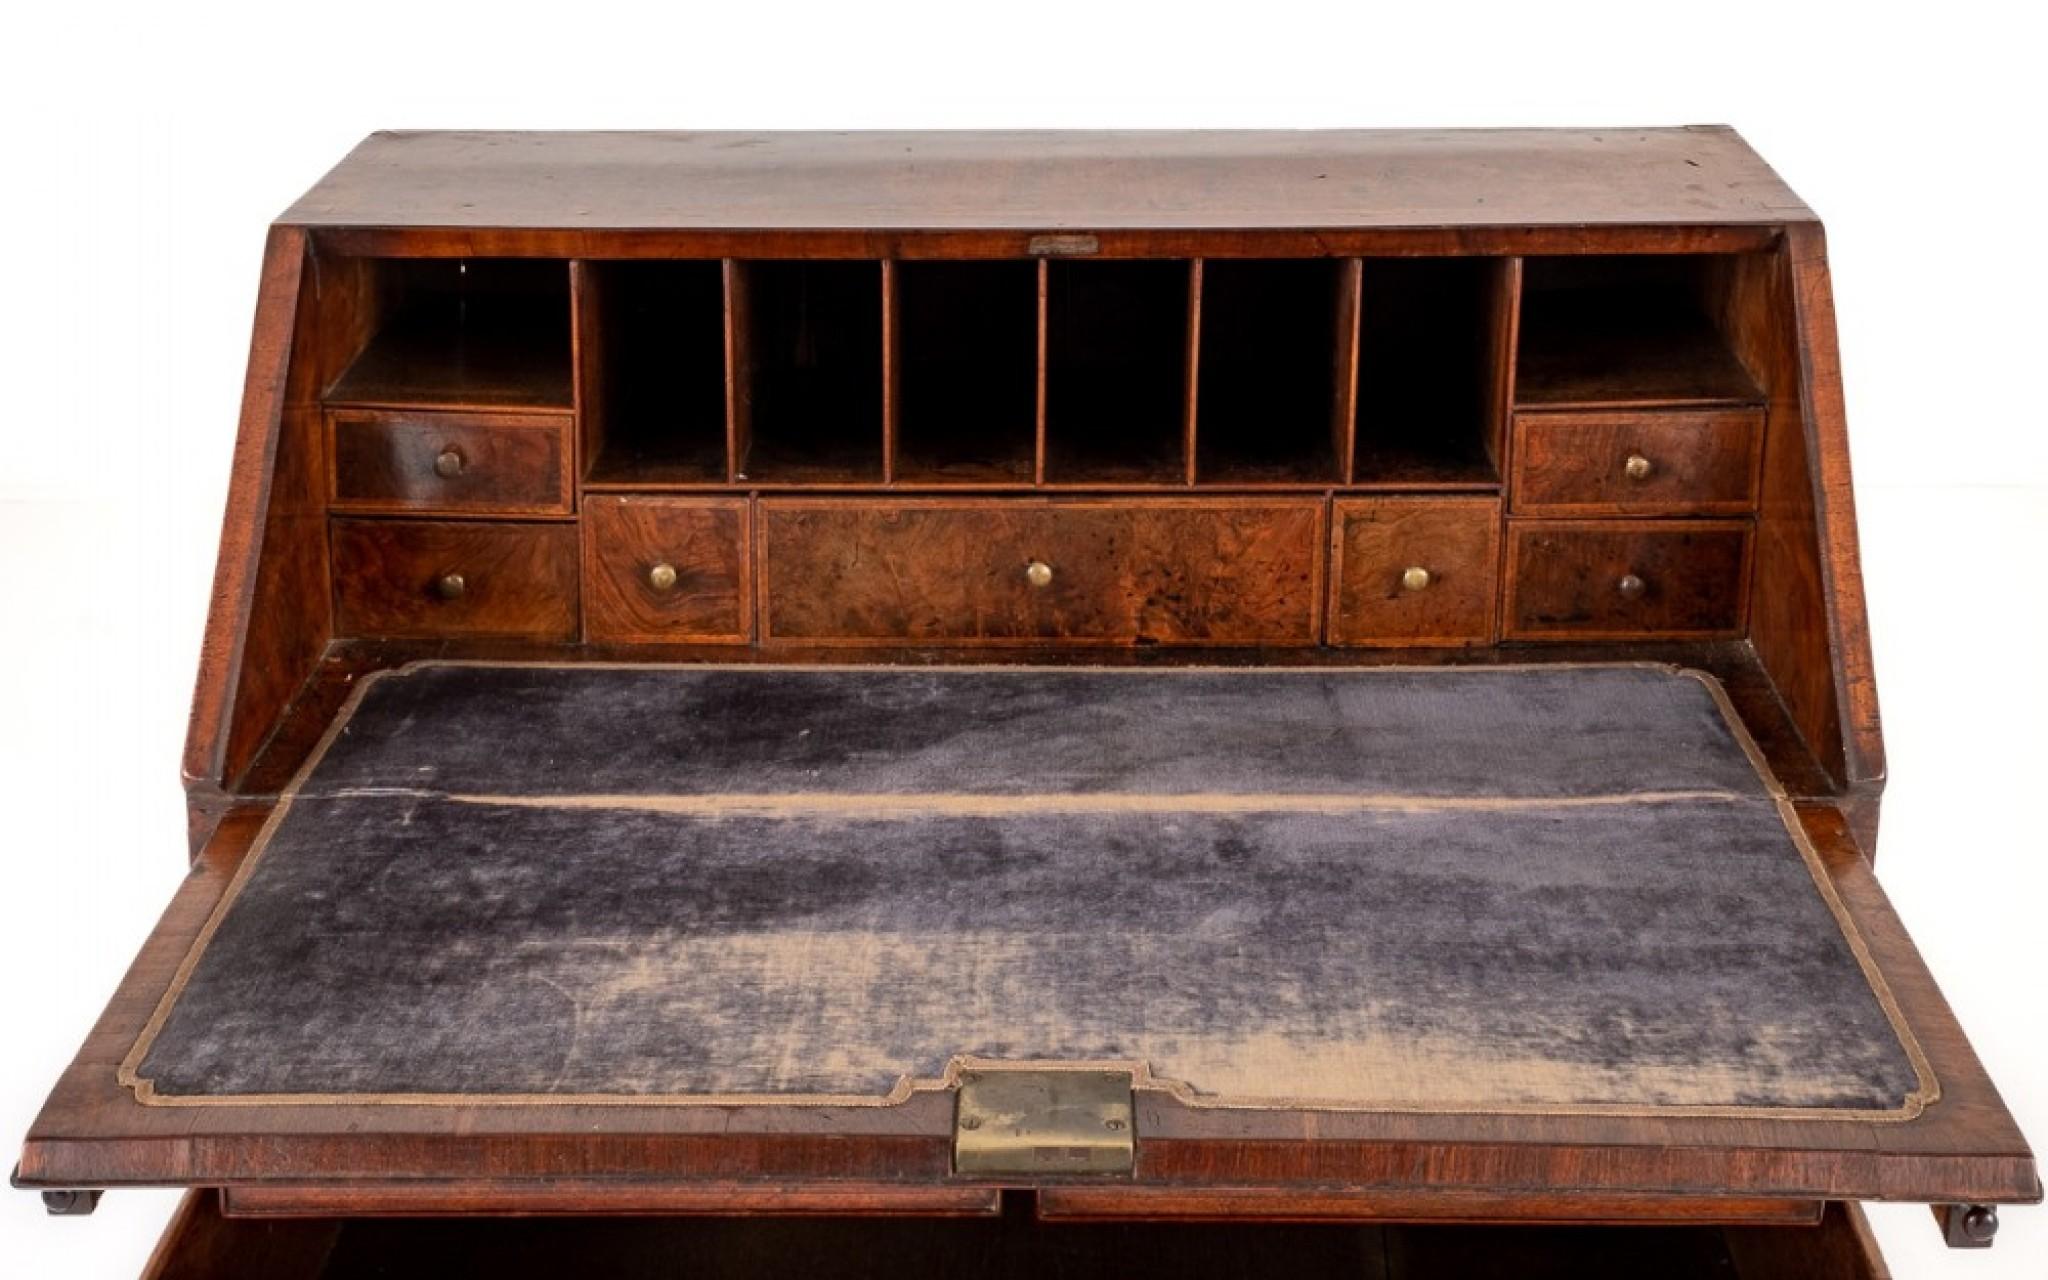 George I Walnuss-Büro.
Dieses Bureau steht auf Konsolenfüßen und verfügt über eine Anordnung von 2 über 2 Eichenholz ausgekleideten Schubladen.
18. Jahrhundert
Die Schubladen und der Fall mit Fischgrätenintarsien.
Das Innere hat ein Sortiment von